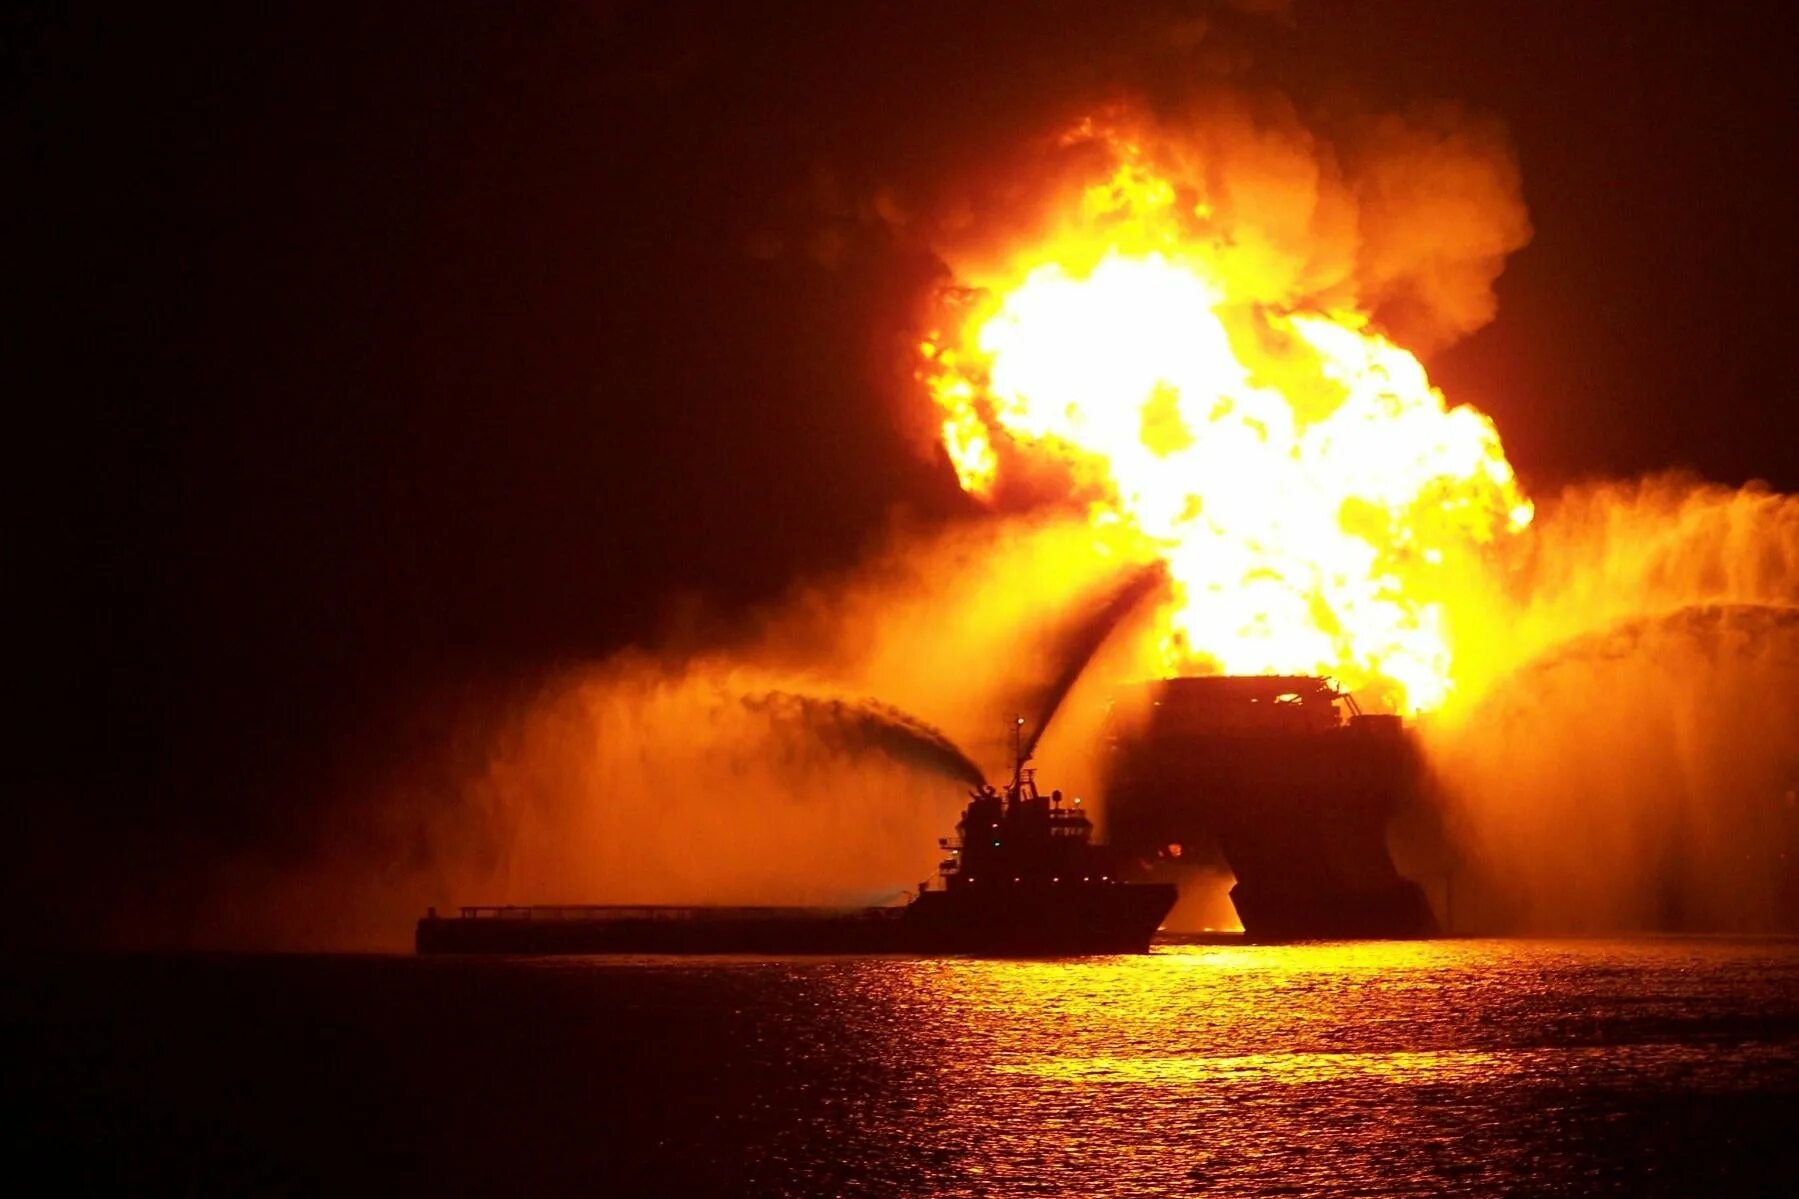 Взрыв нефтяной платформы Deepwater Horizon. Взрыв нефтяной платформы в мексиканском заливе 20 апреля 2010. Бритиш Петролеум авария в мексиканском заливе. Взрыв нефтяной платформы Horizon Oil (20 апреля 2010 года). 30 апреля 2010